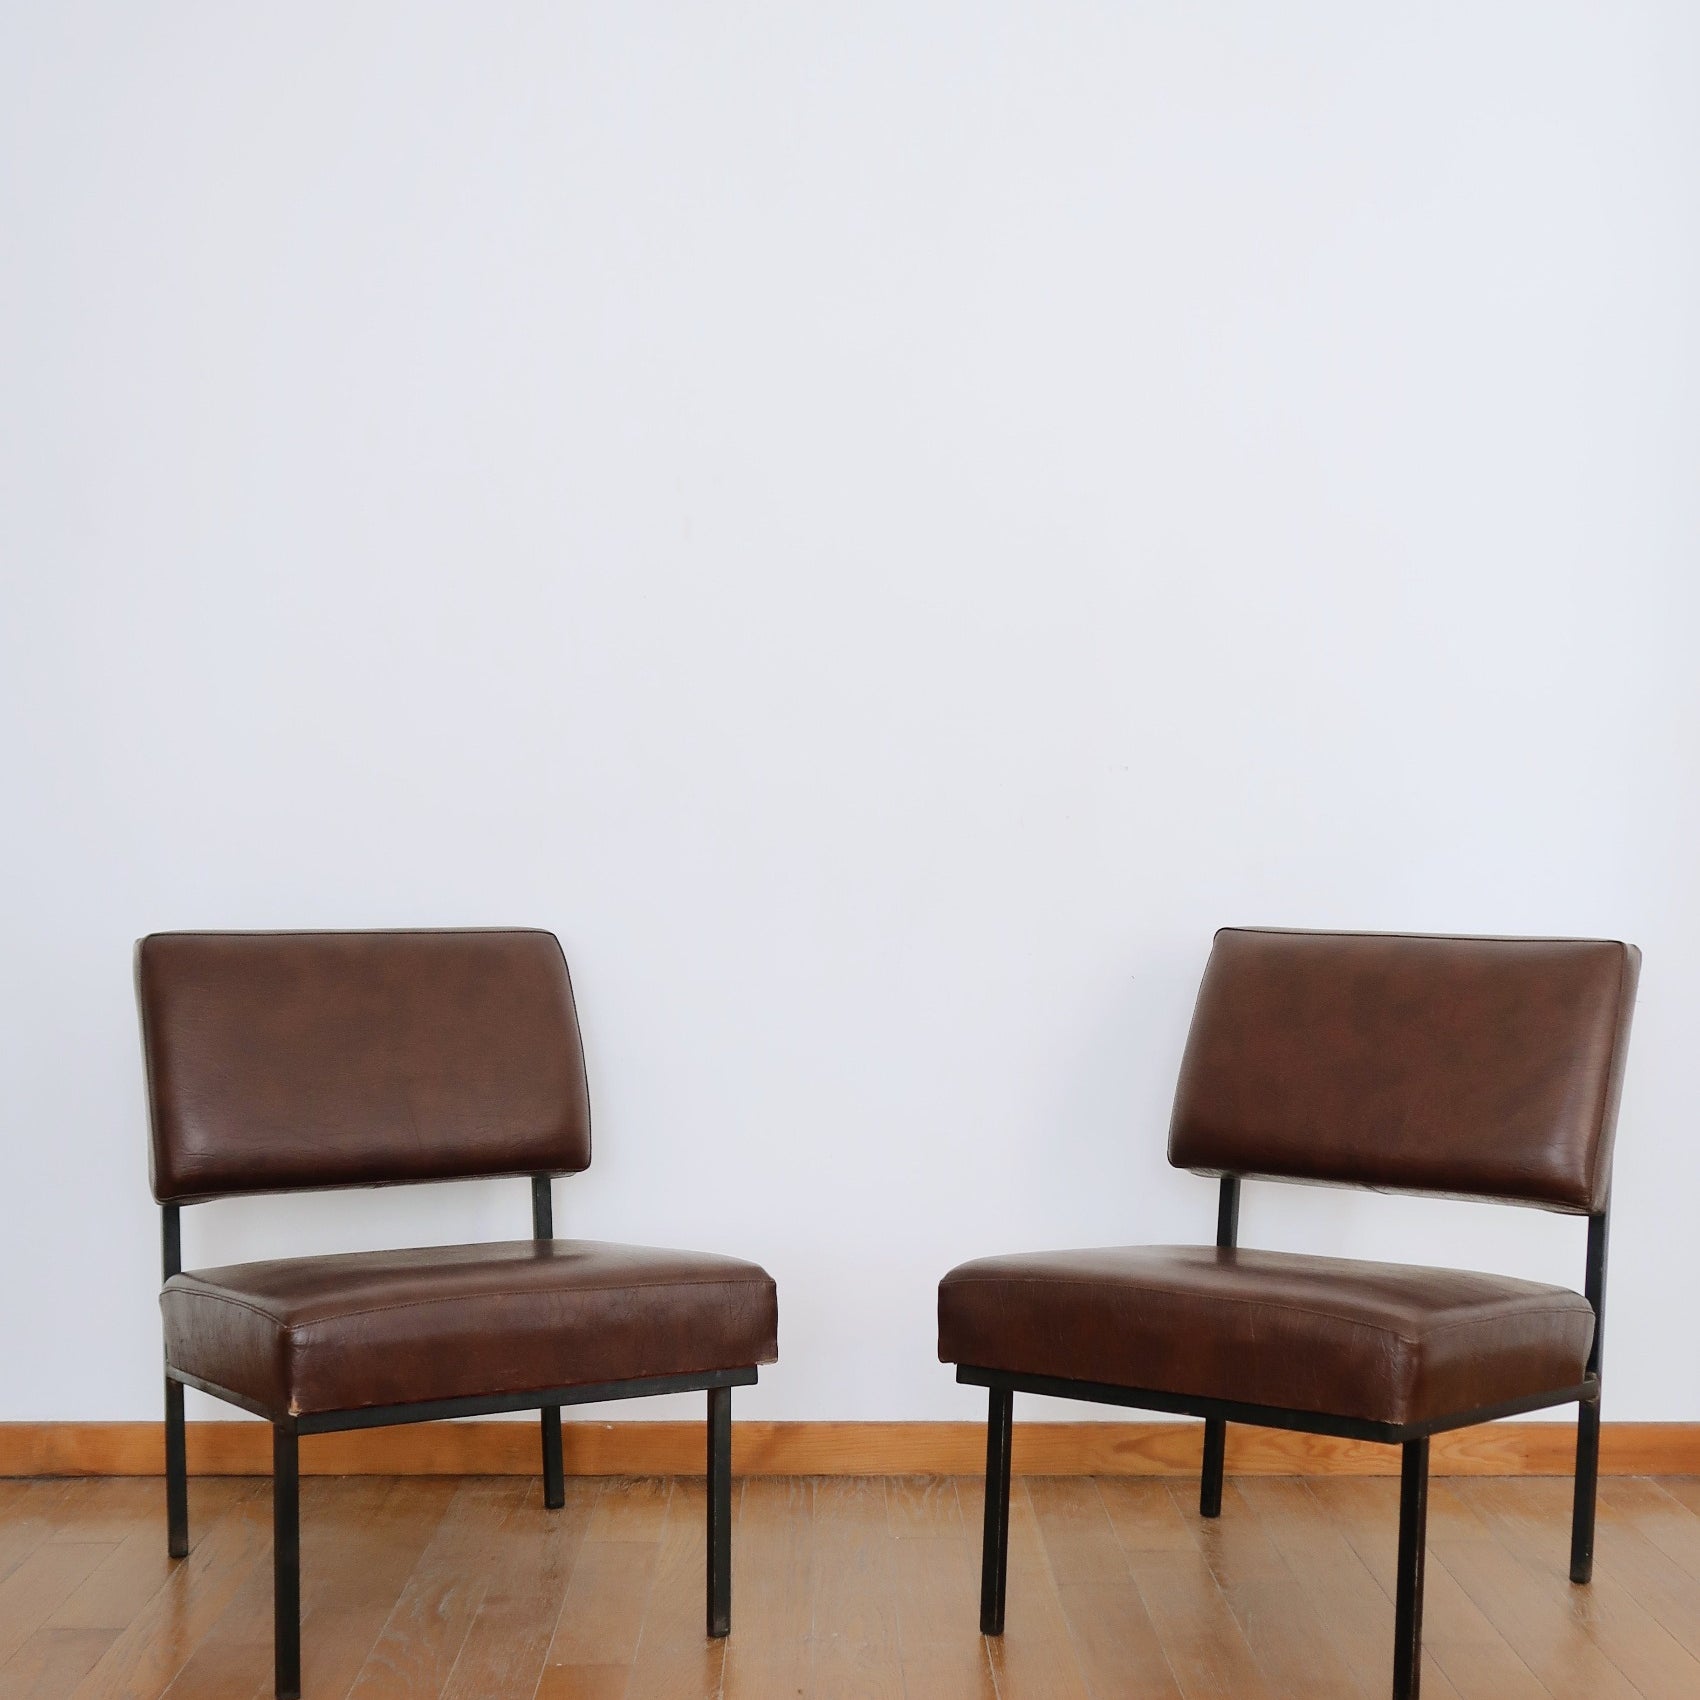 paire 2 chaises chauffeuses fauteuil skaï noir bordeaux marrond pied metallique scandniave danois vintage bauhaus